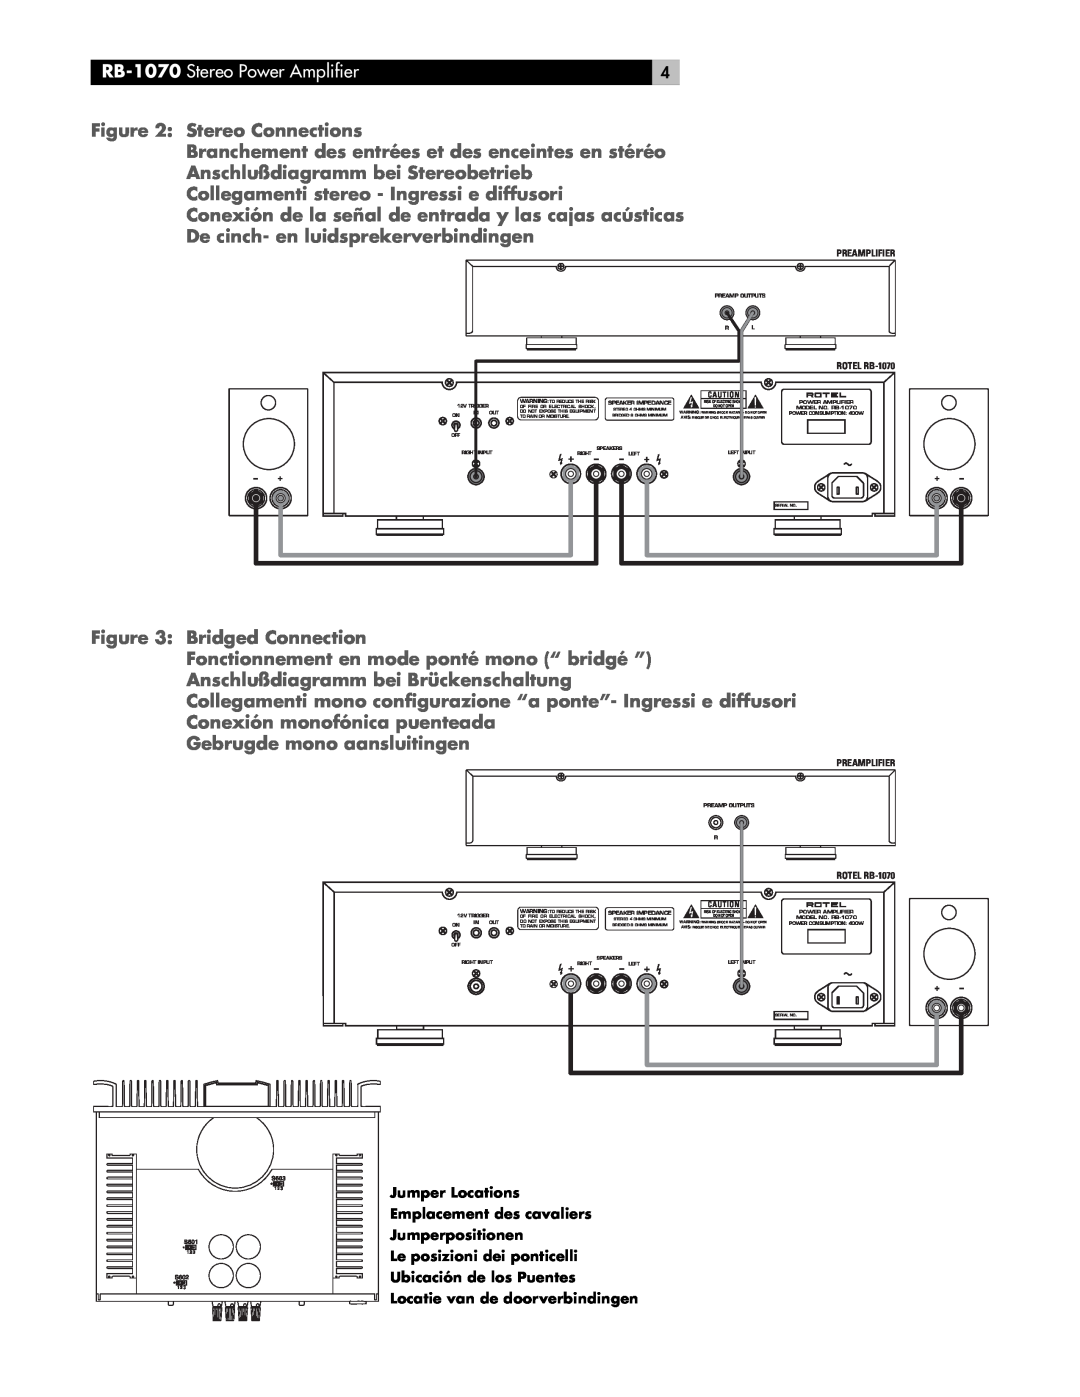 Rotel RB-1070 Stereo Connections, Anschlußdiagramm bei Stereobetrieb, Collegamenti stereo - Ingressi e diffusori 